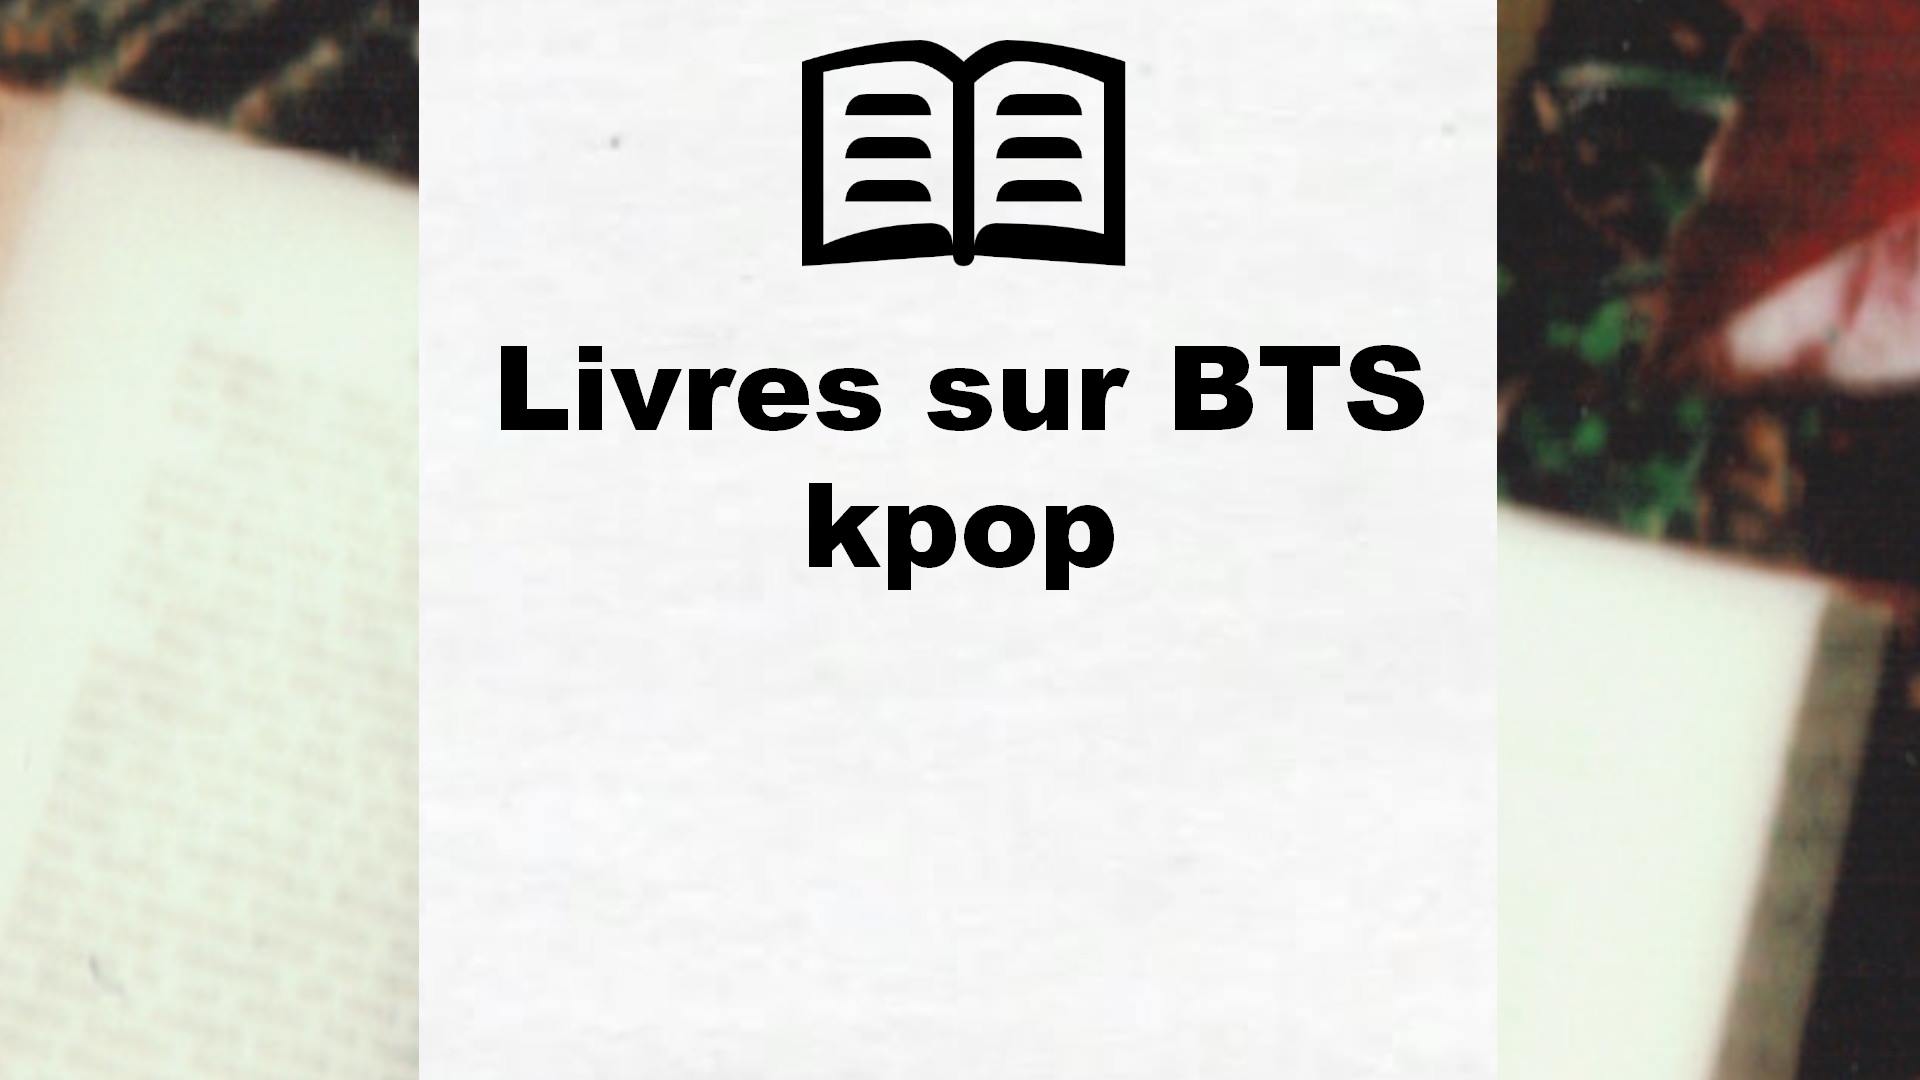 Livres sur BTS kpop